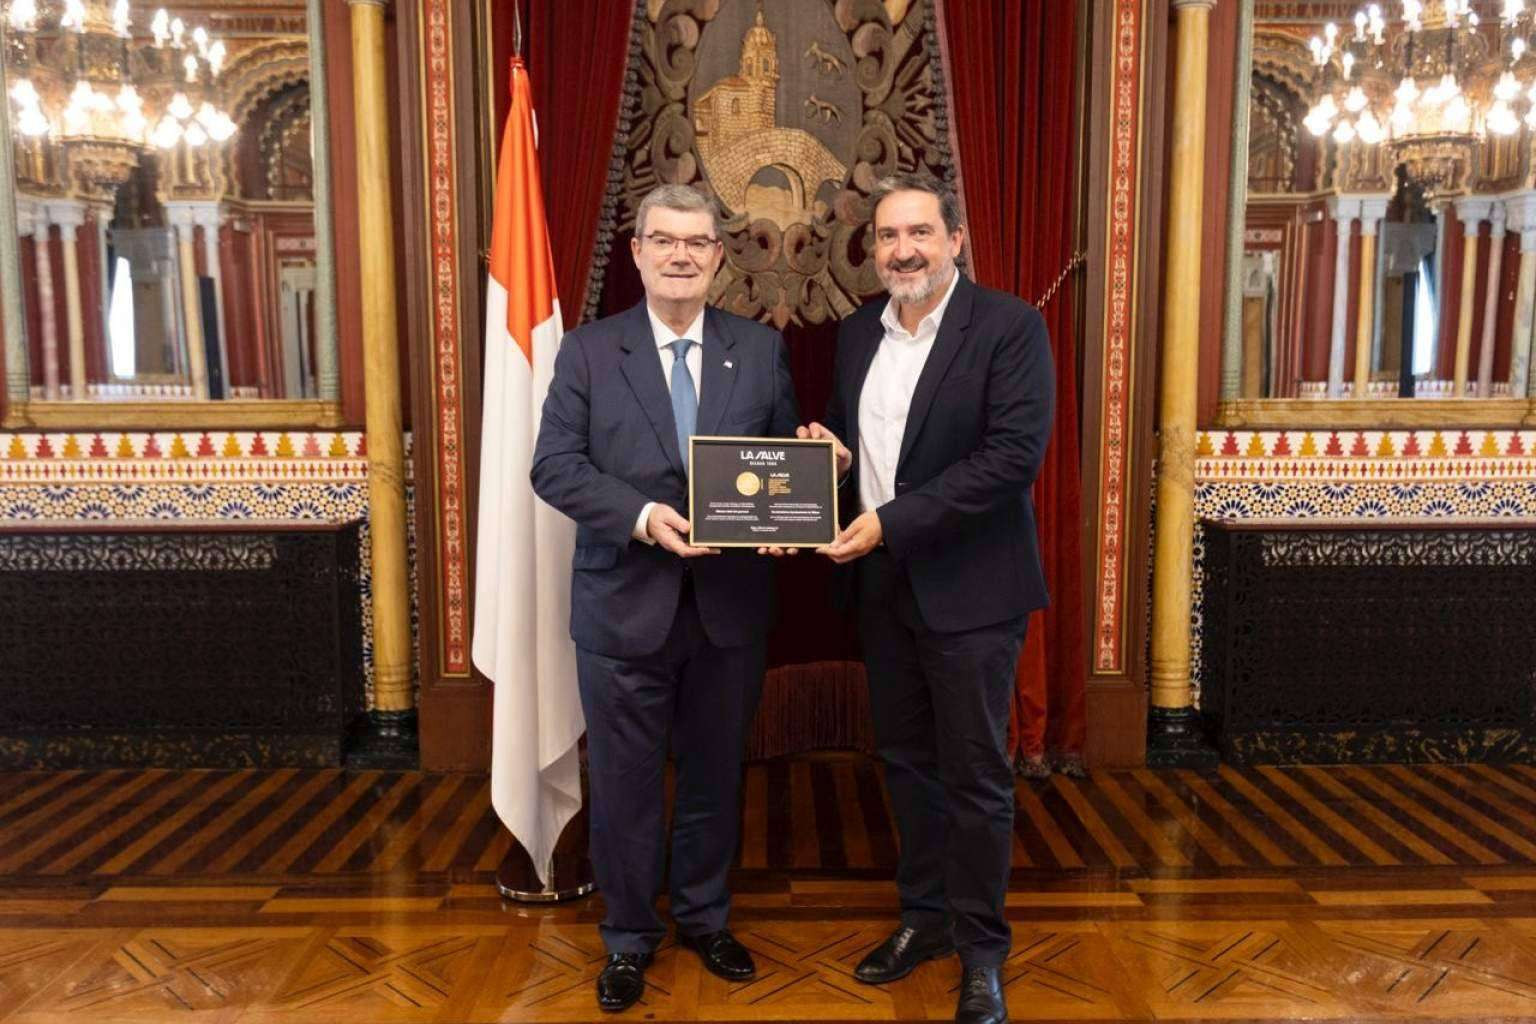  La Salve hace entrega a la ciudad de Bilbao de los reconocimientos internacionales obtenidos 